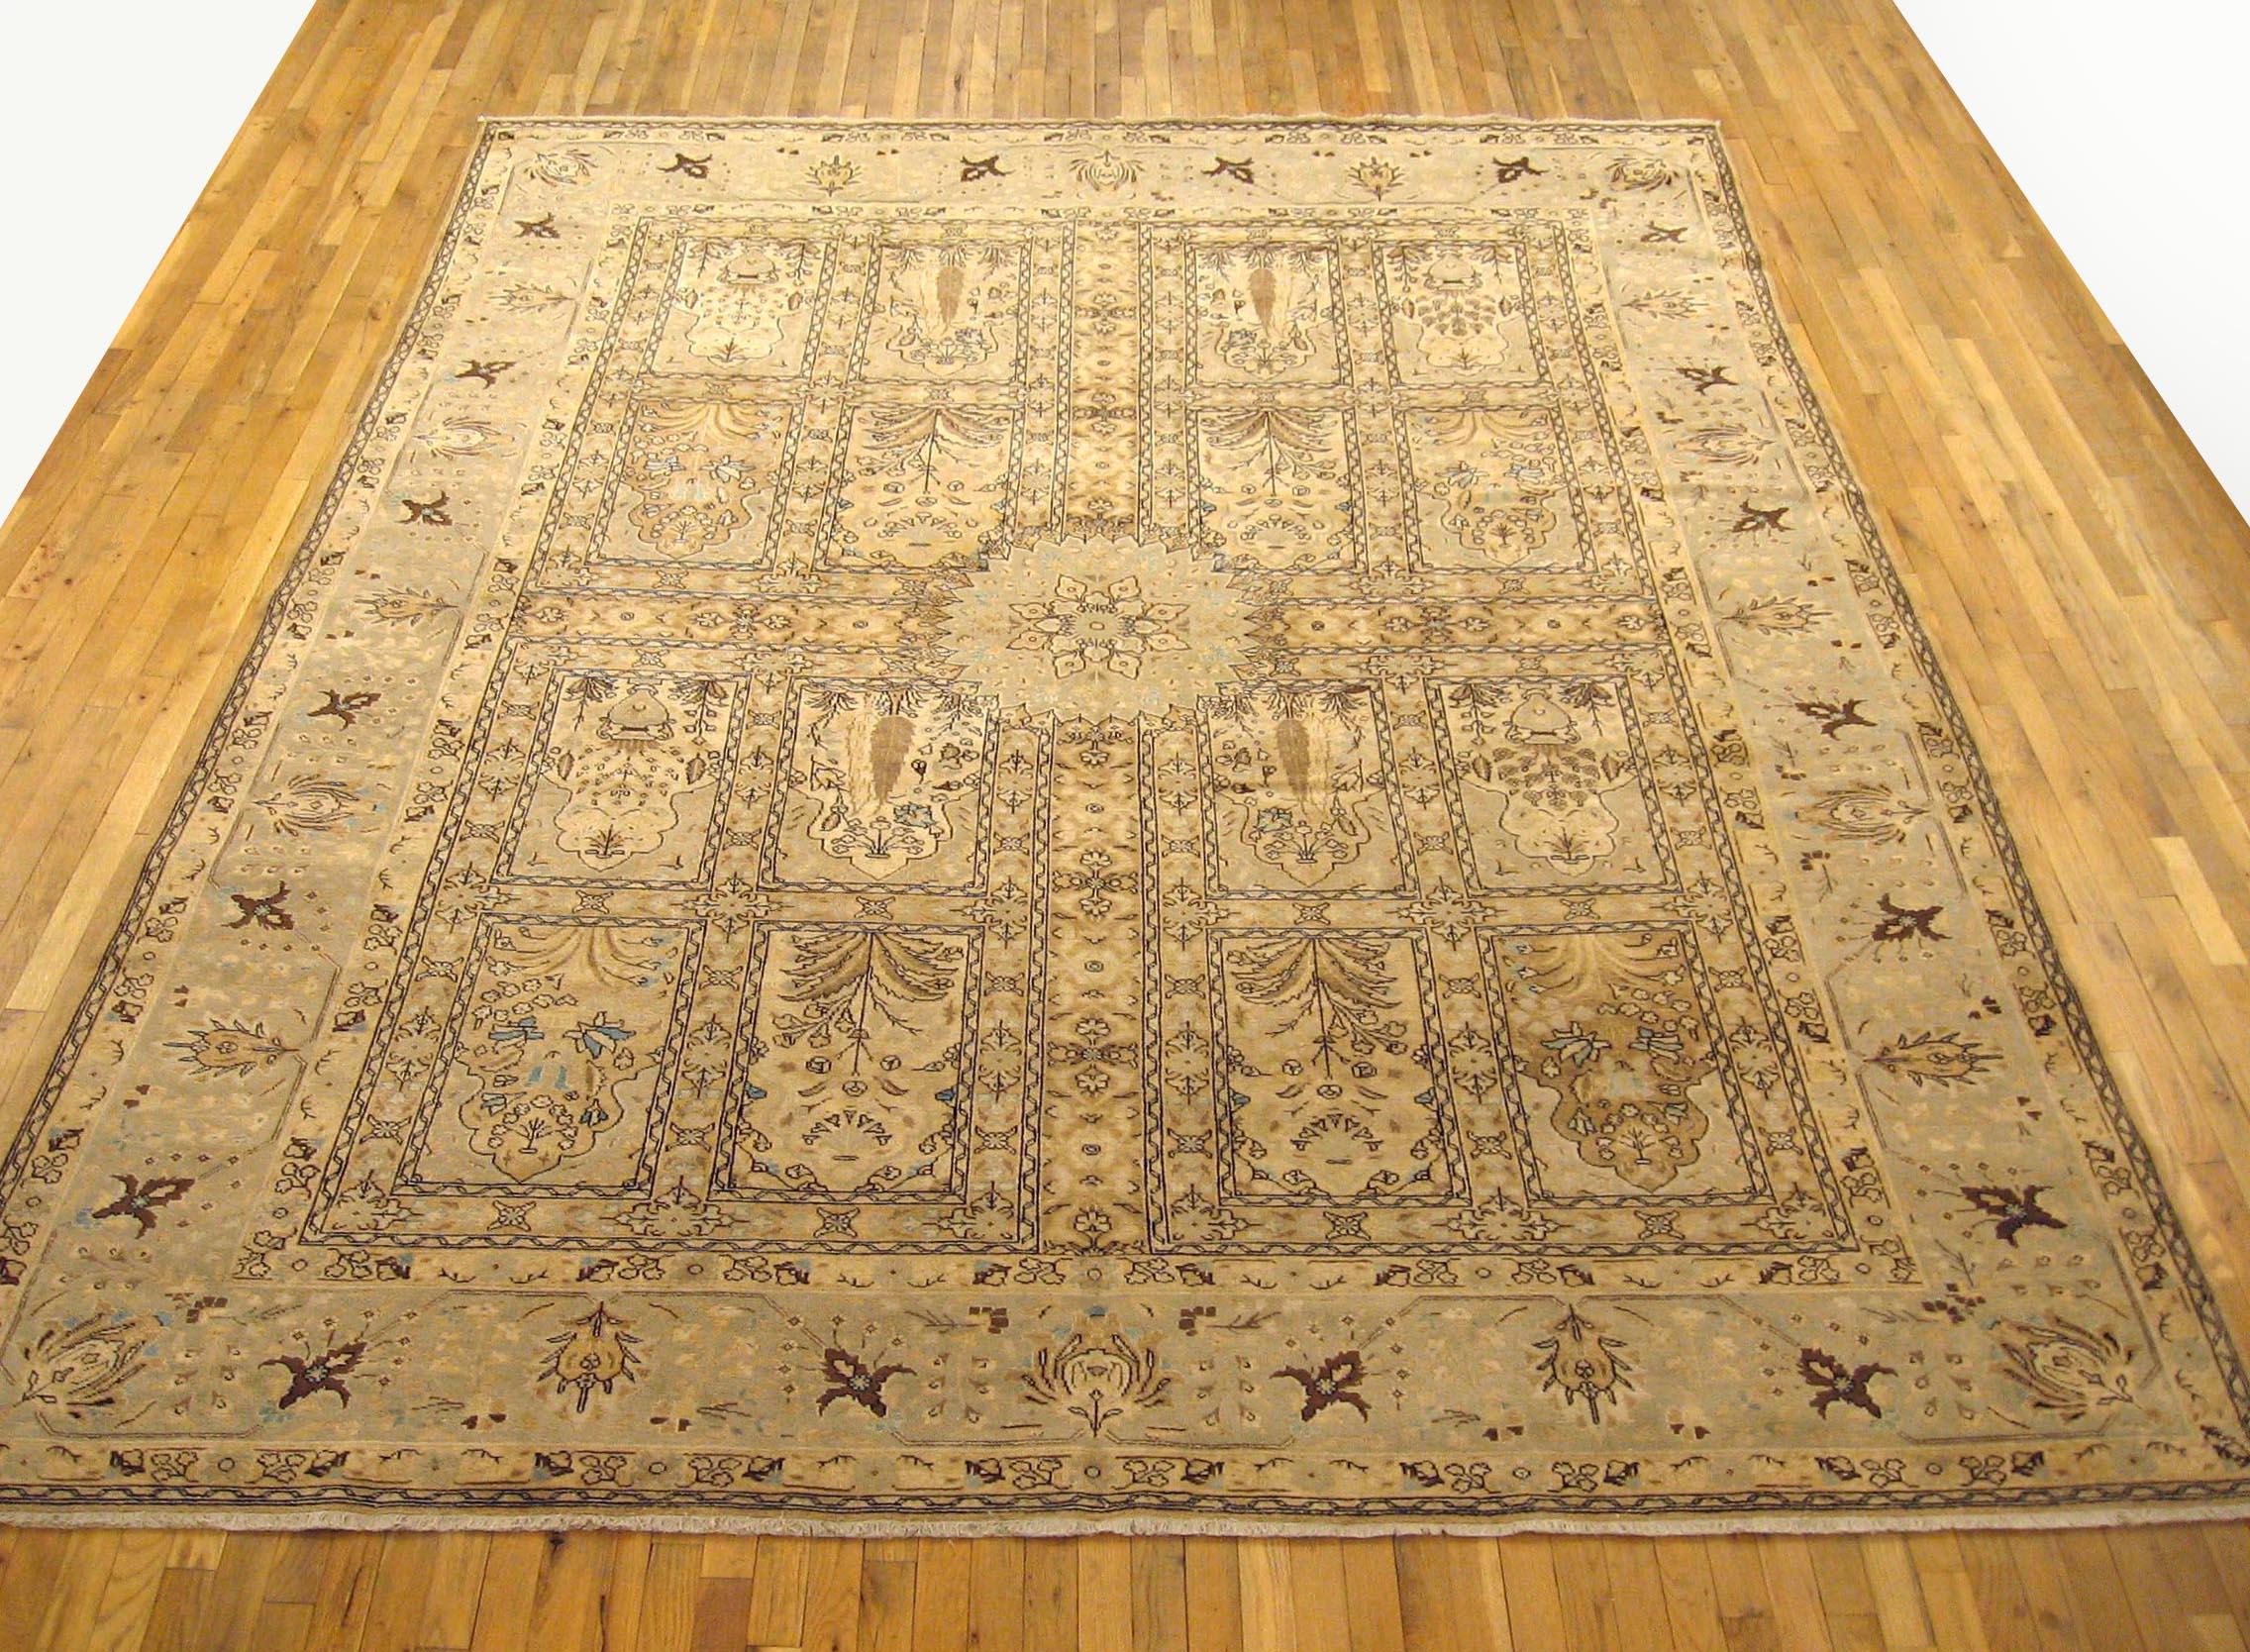 Antique Persian Tabriz Oriental Carpet, circa 1920, Room Sized.

An antique Persian Tabriz oriental carpet, circa 1920. Size: 12.0